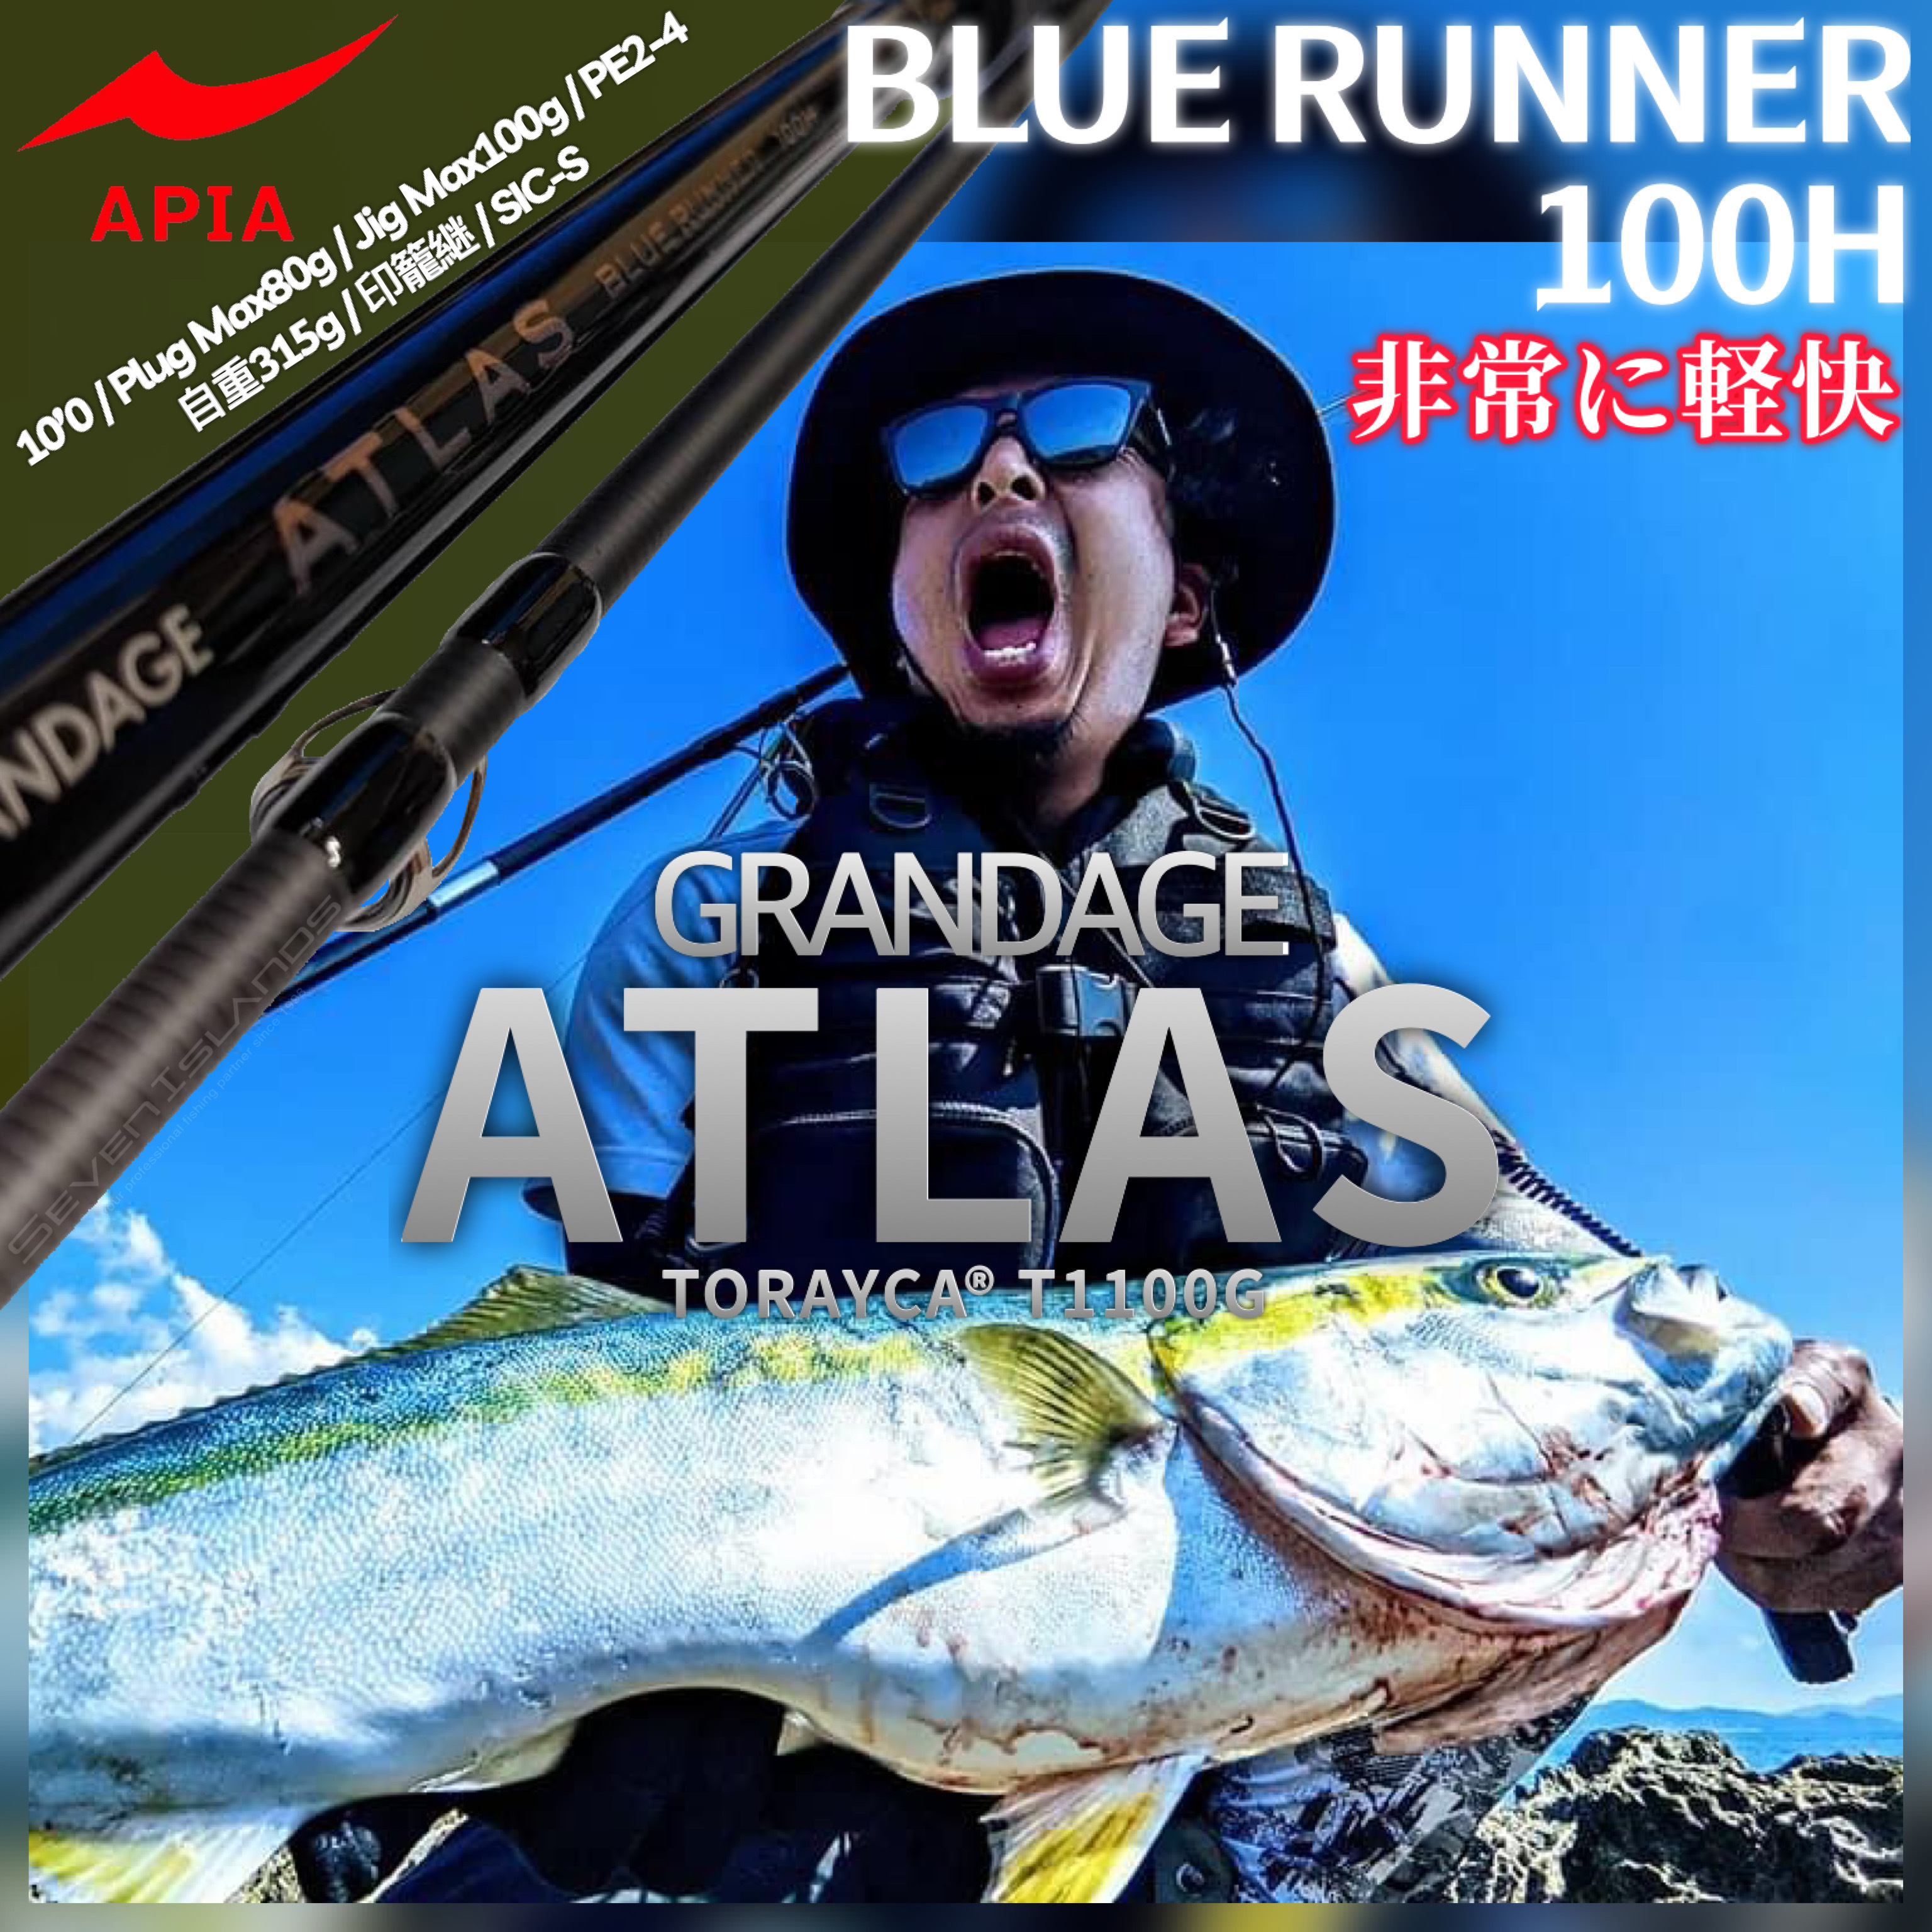 GRANDAGE ATLAS BLUE RUNNER 105HHH